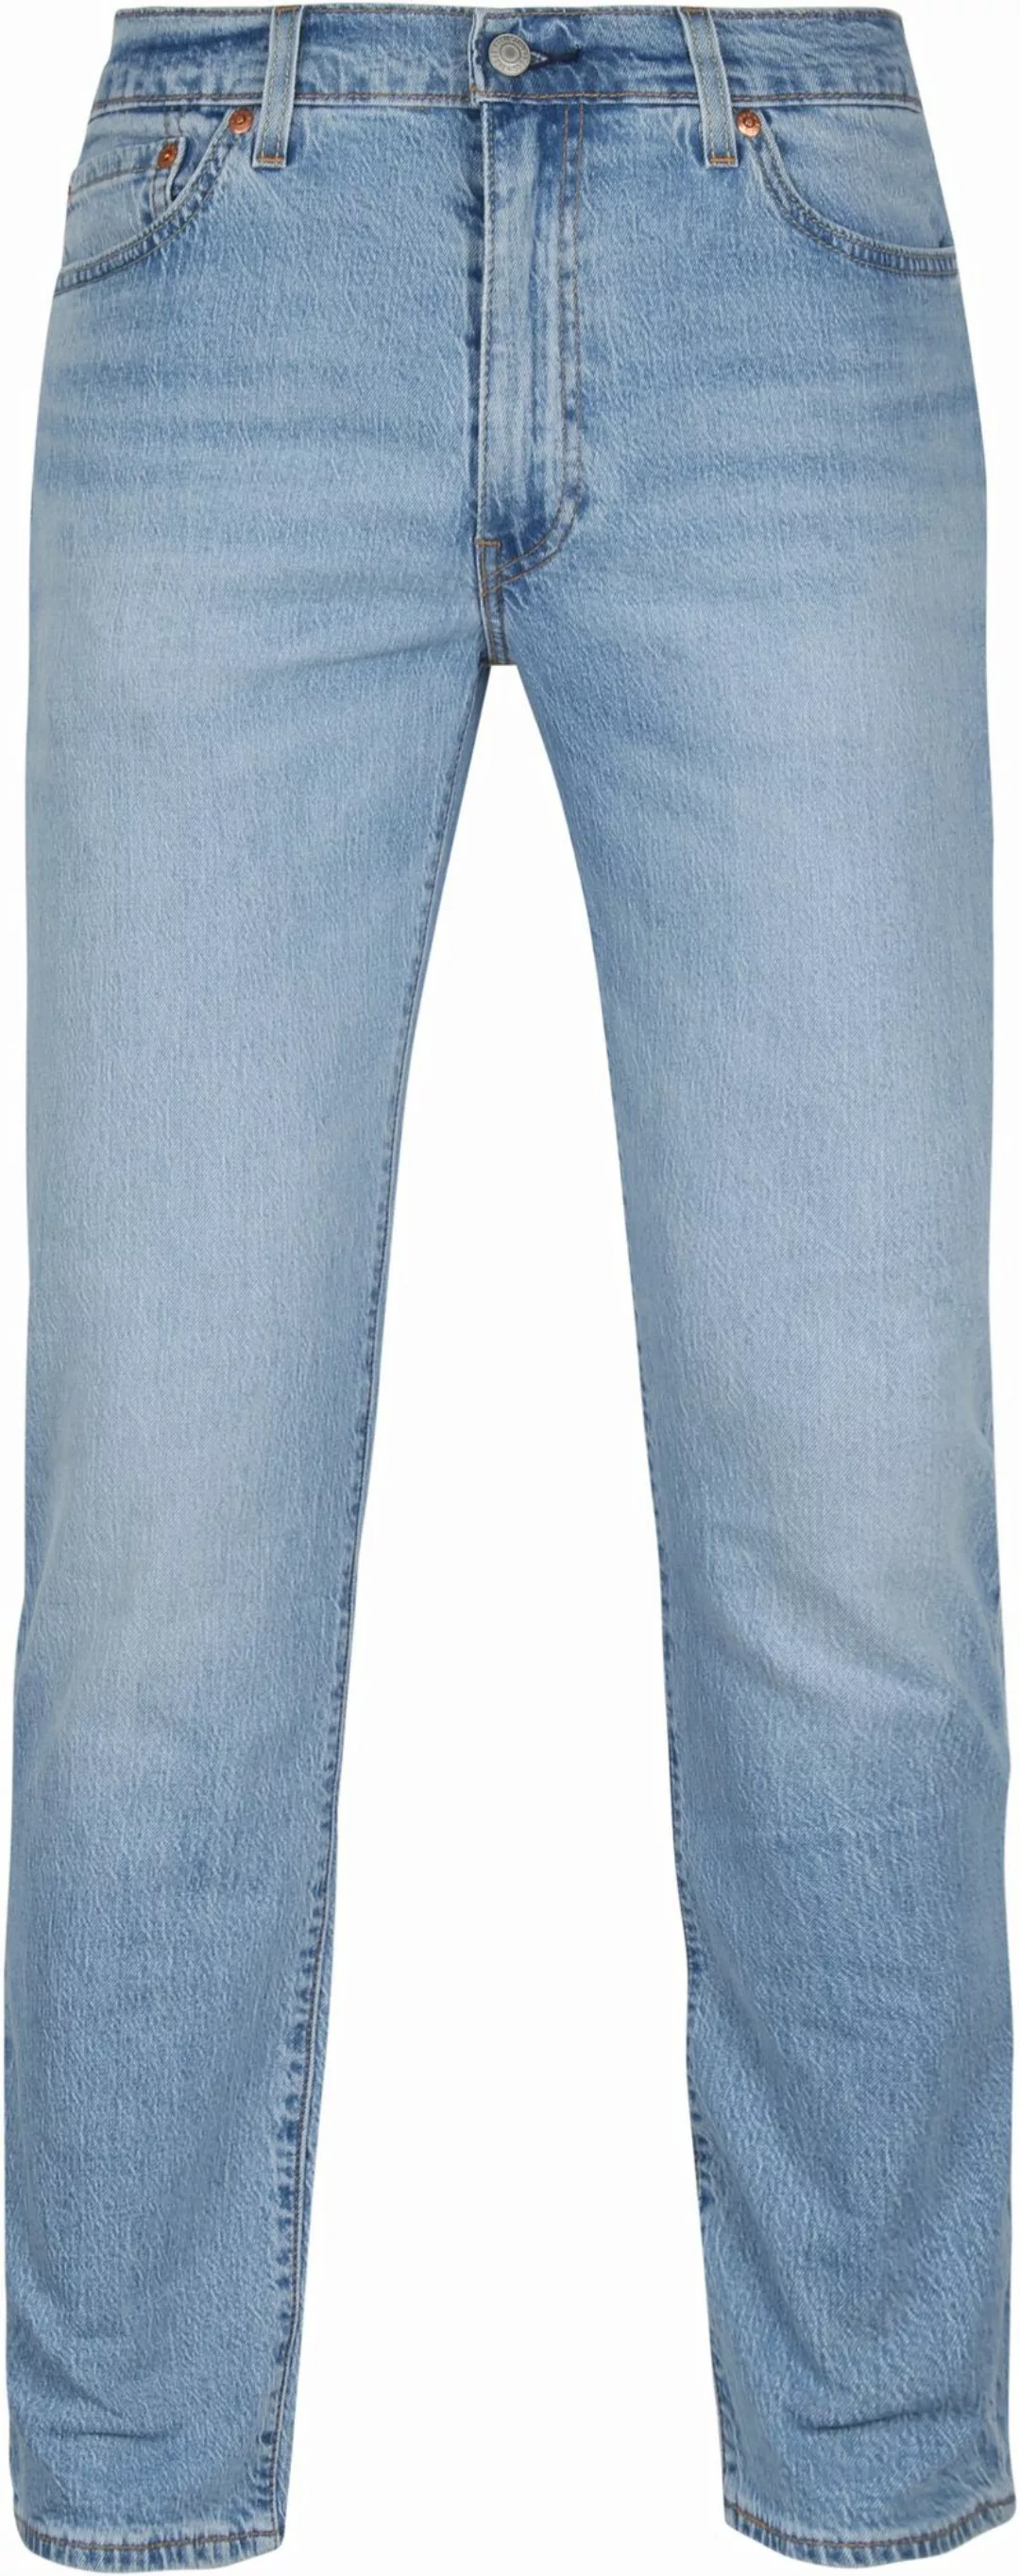 Levi's 511 Jeanshose Blau - Größe W 33 - L 34 günstig online kaufen